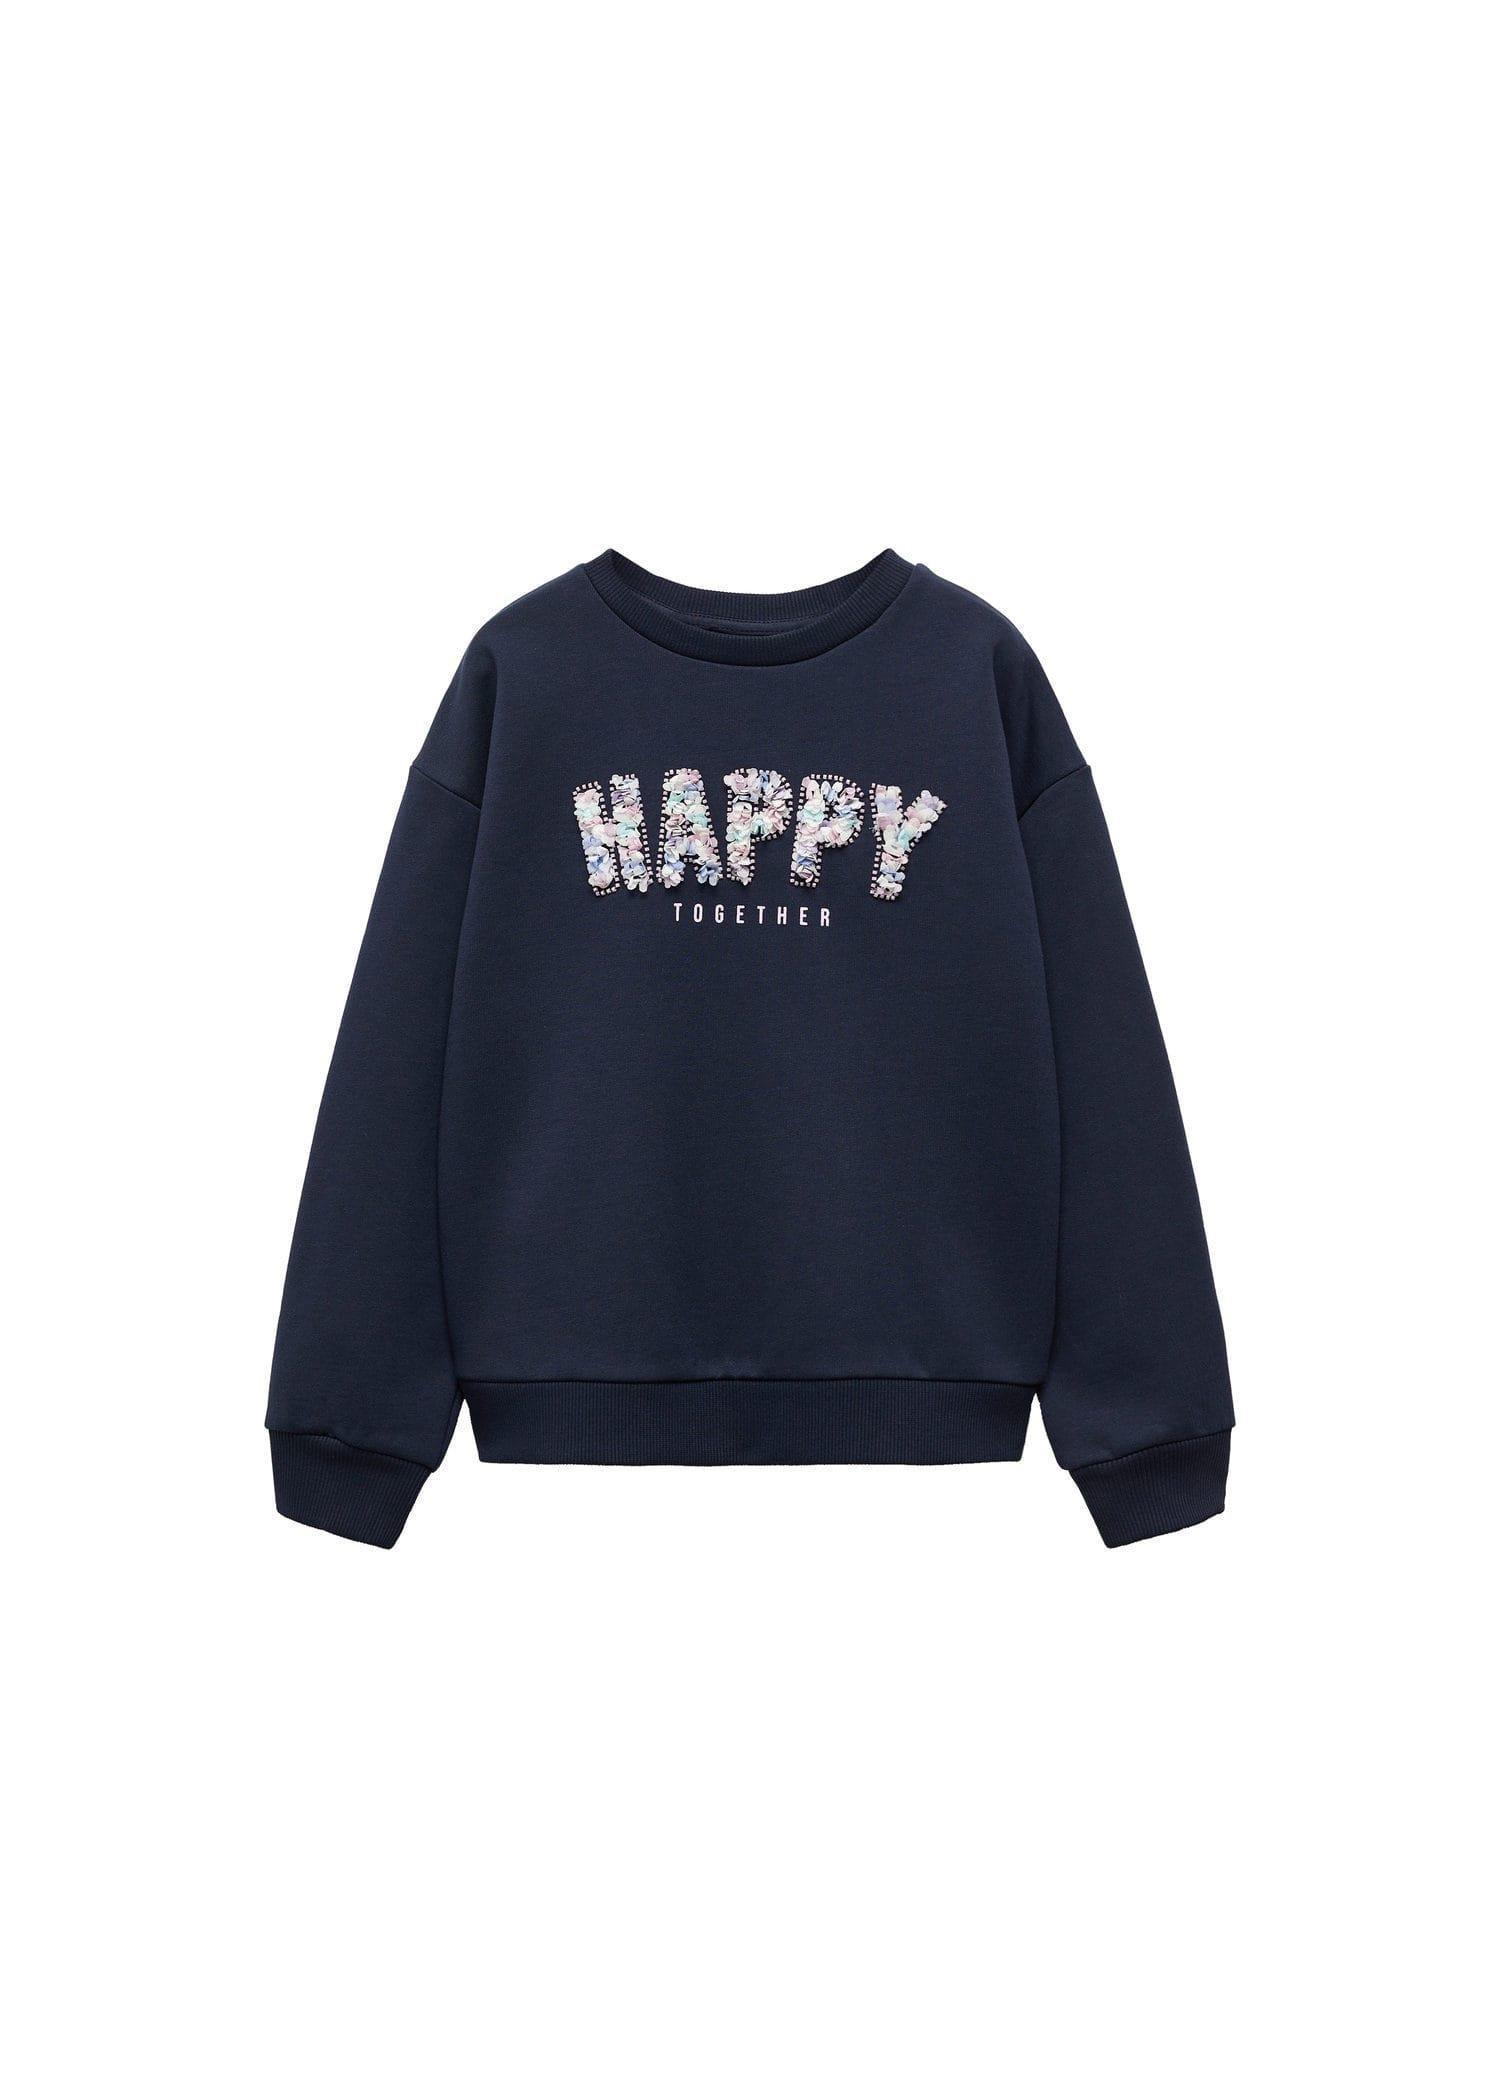 Mango - Navy Embroidered Message Sweatshirt, Kids Girls